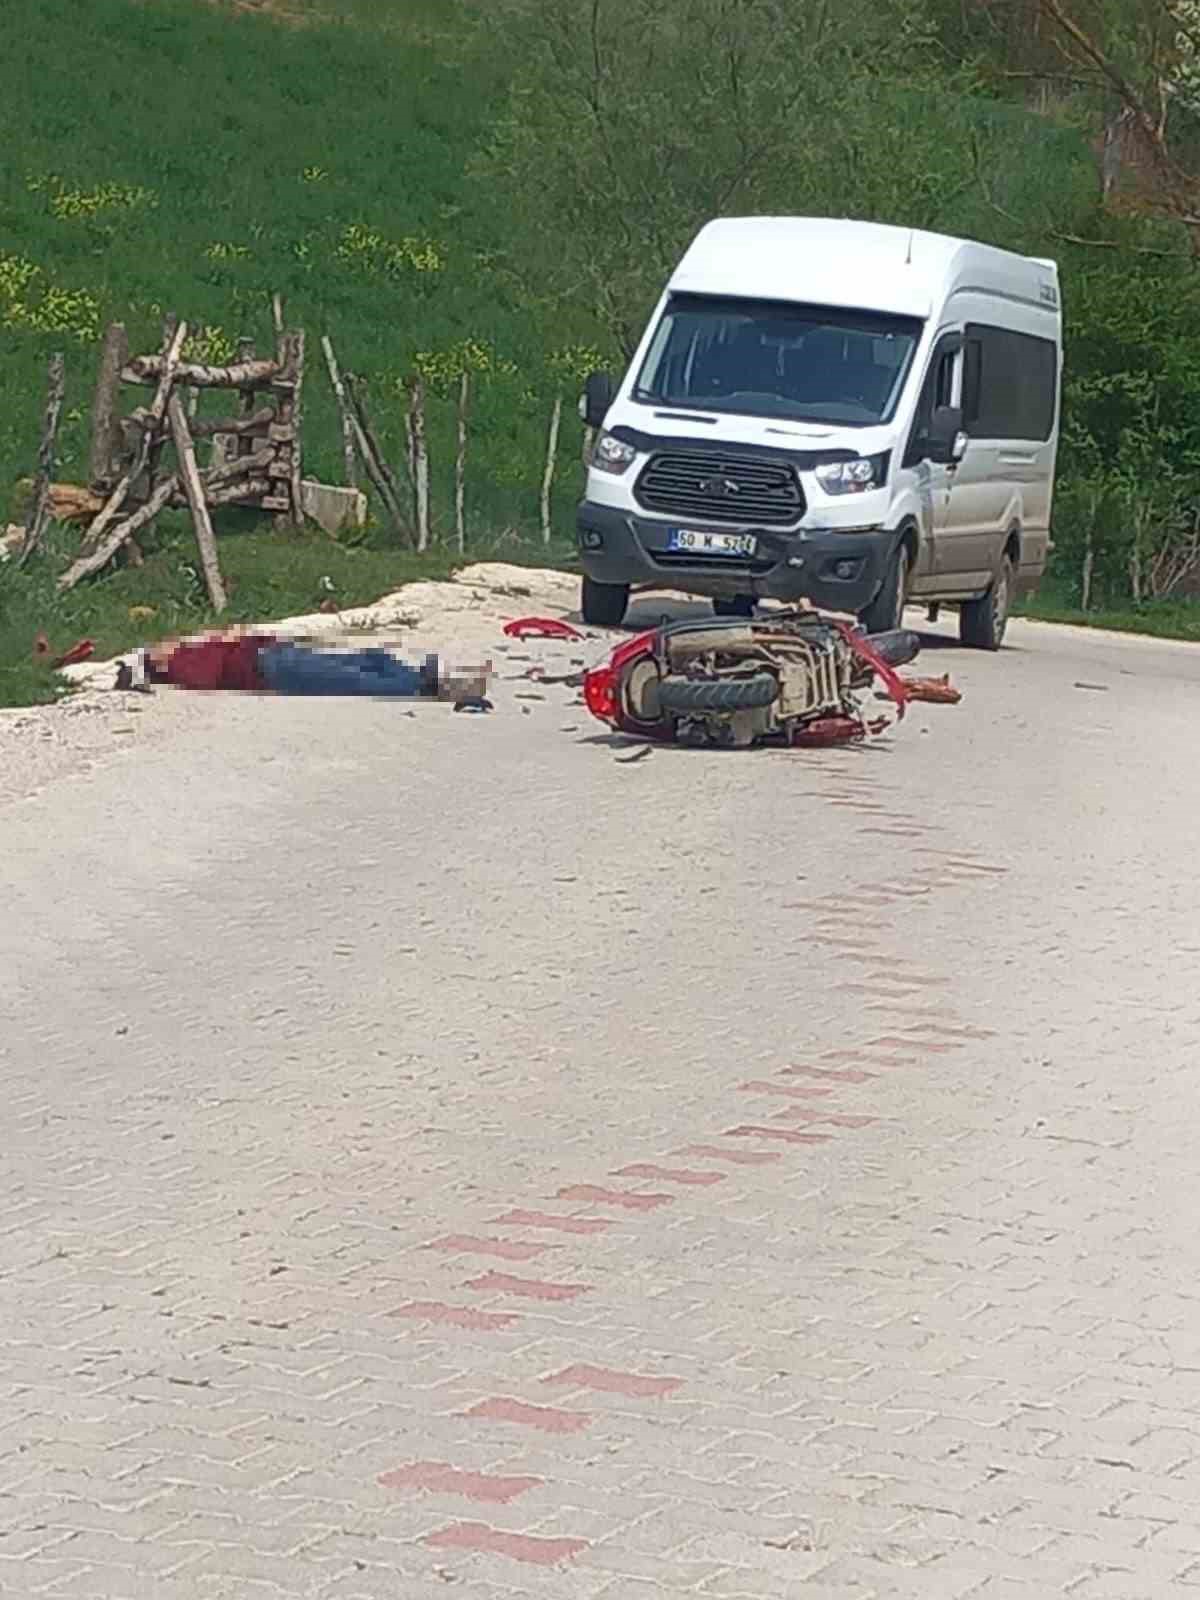 Tokat’ta minibüs motosikletle çarpıştı: 1 ölü
